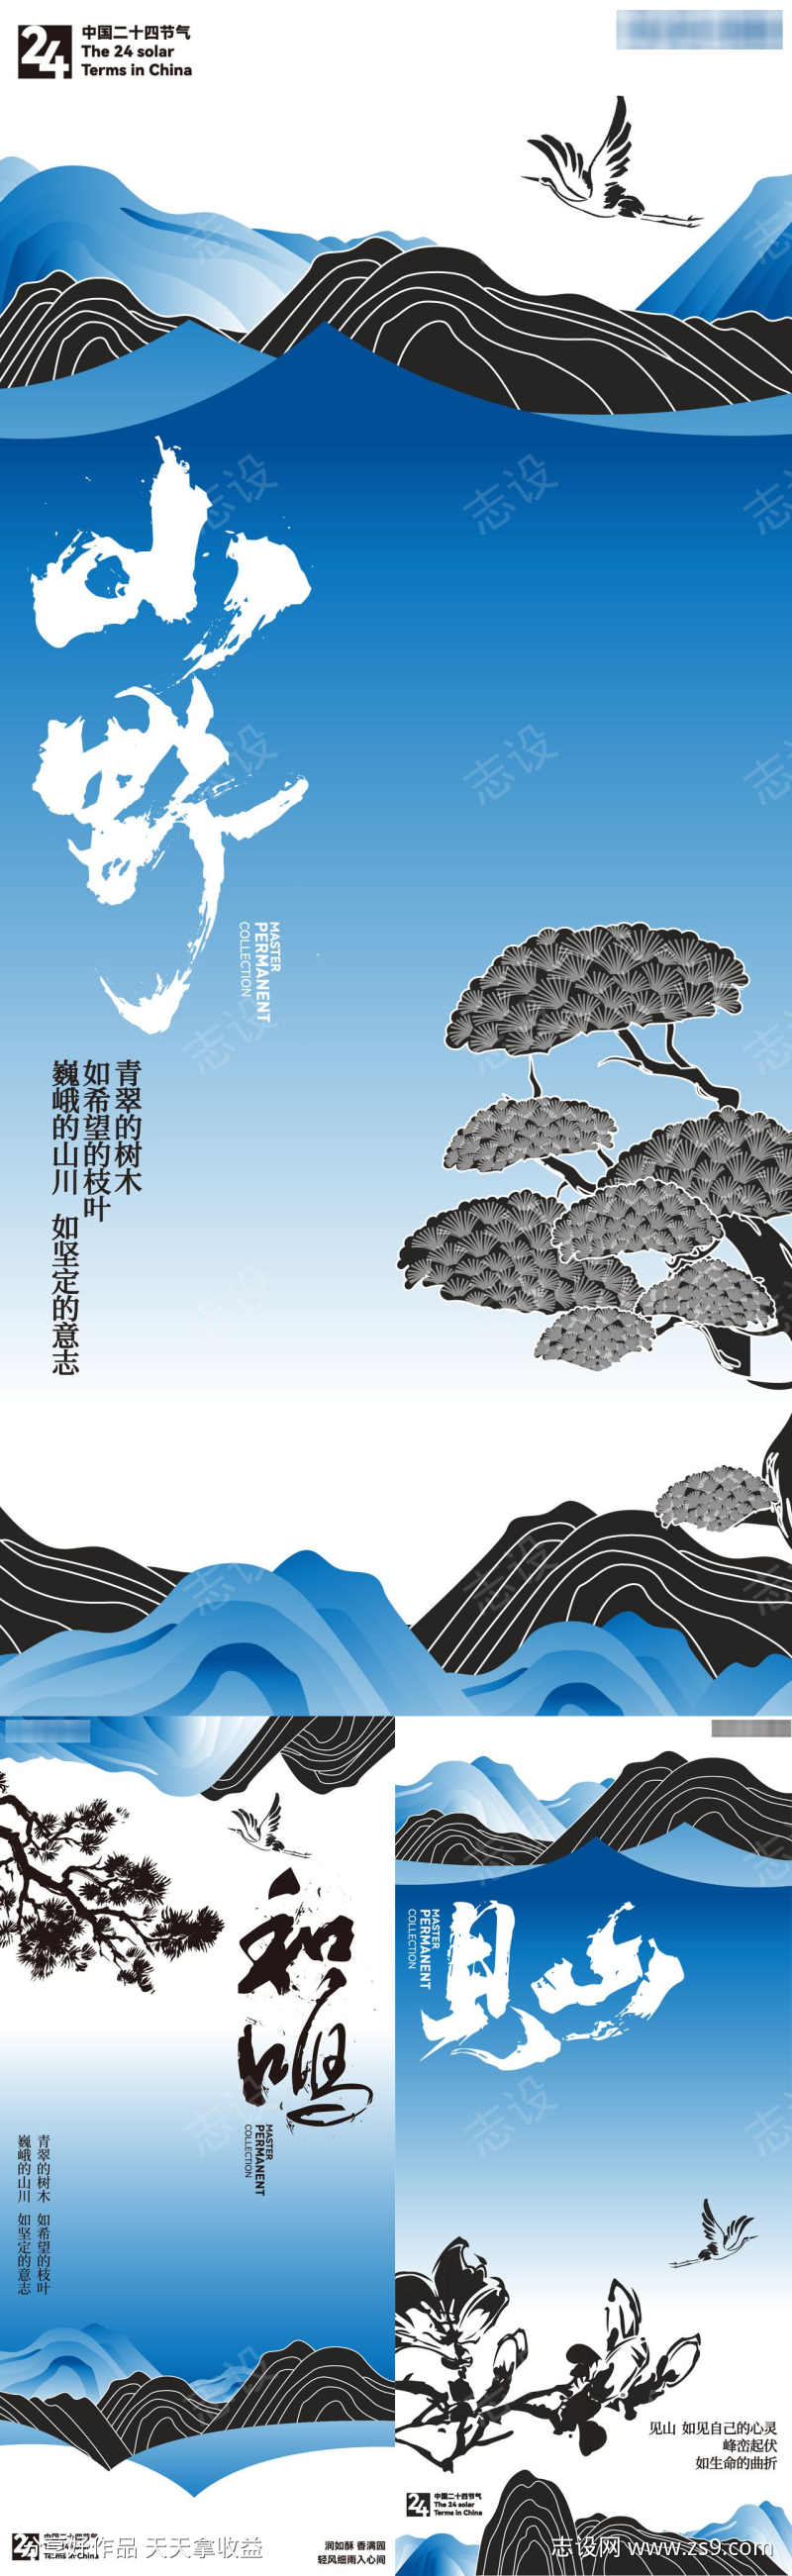 中国风山水创意海报